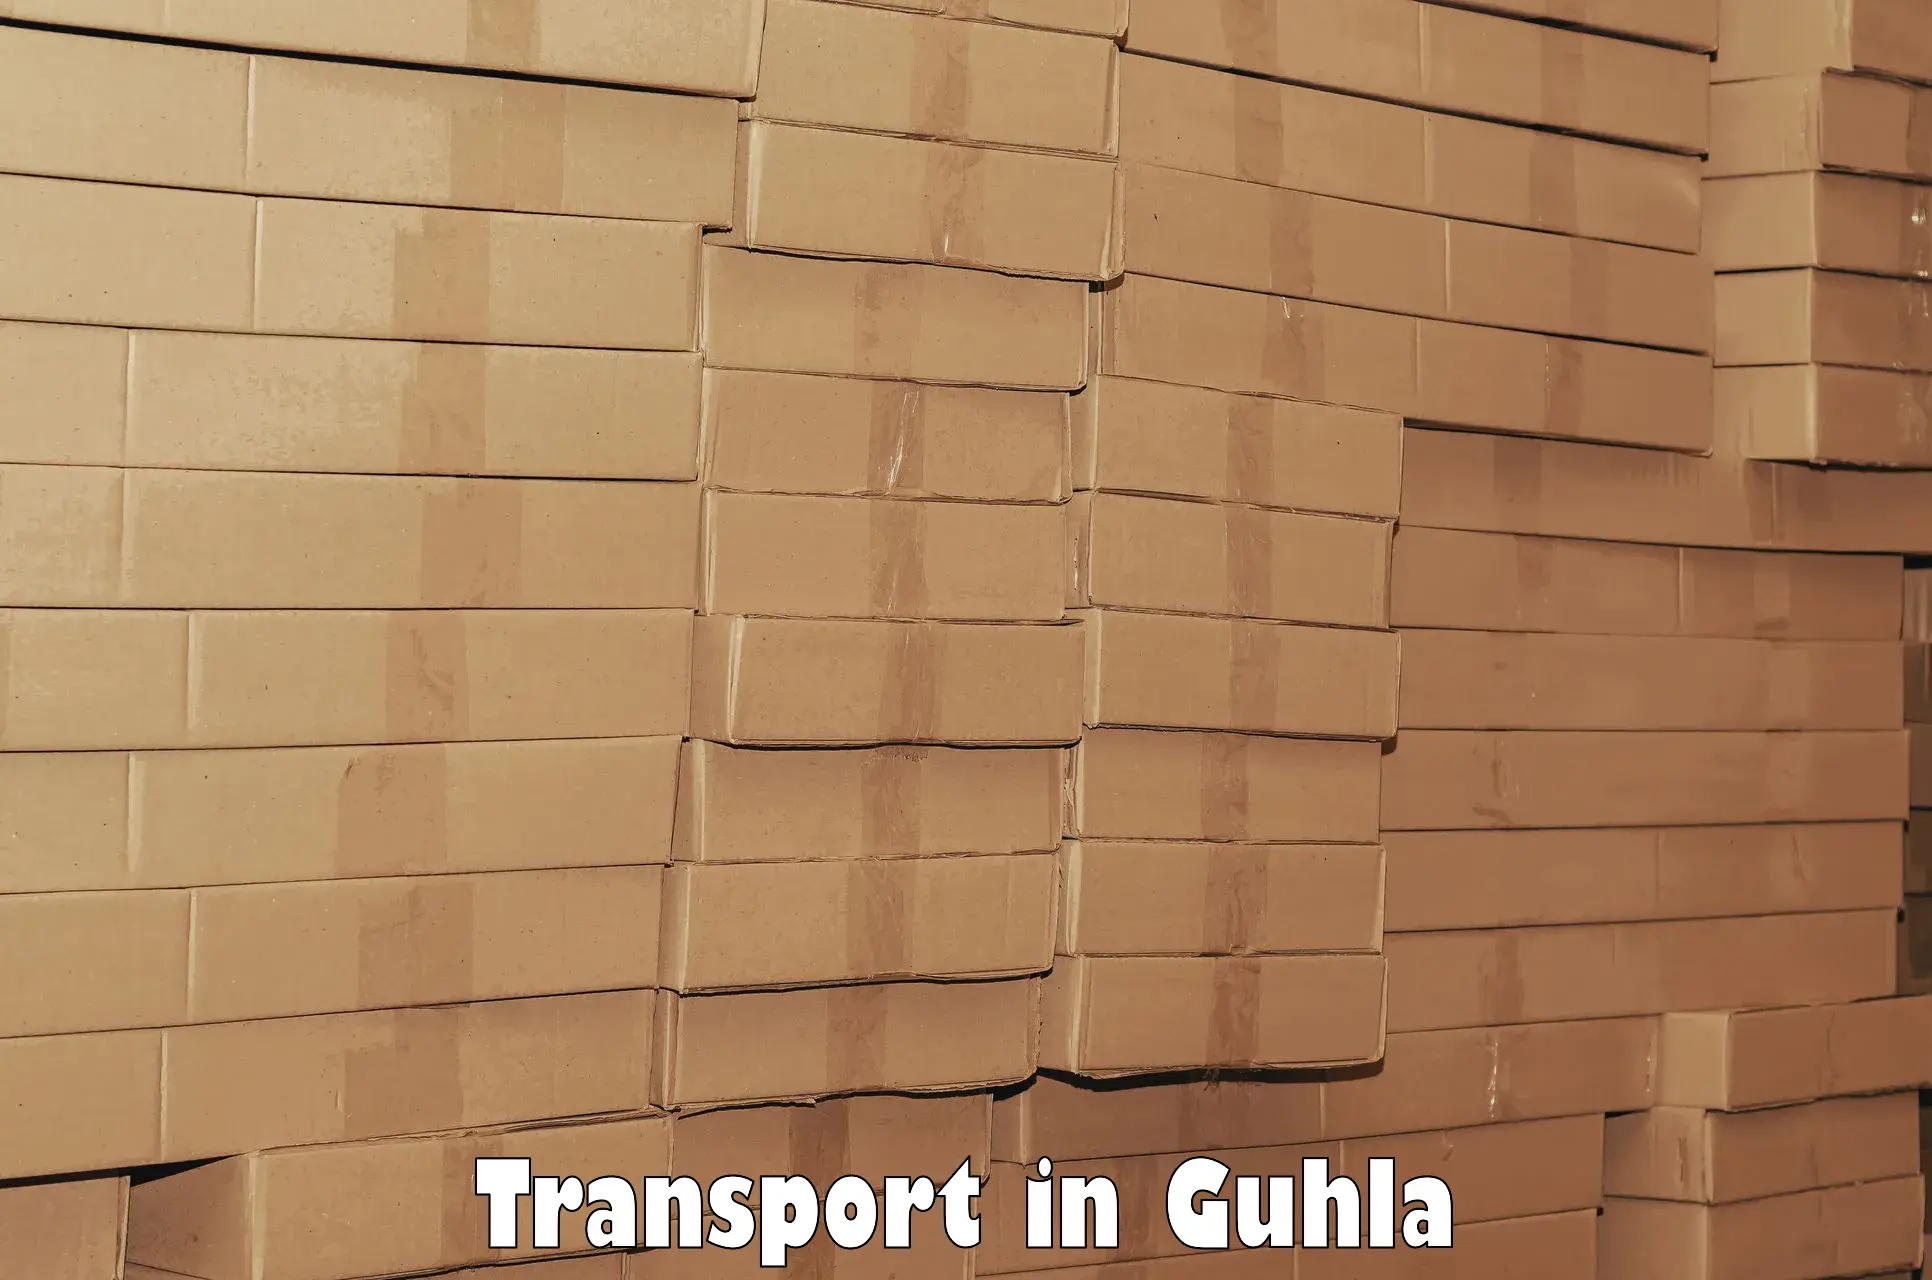 Online transport in Guhla